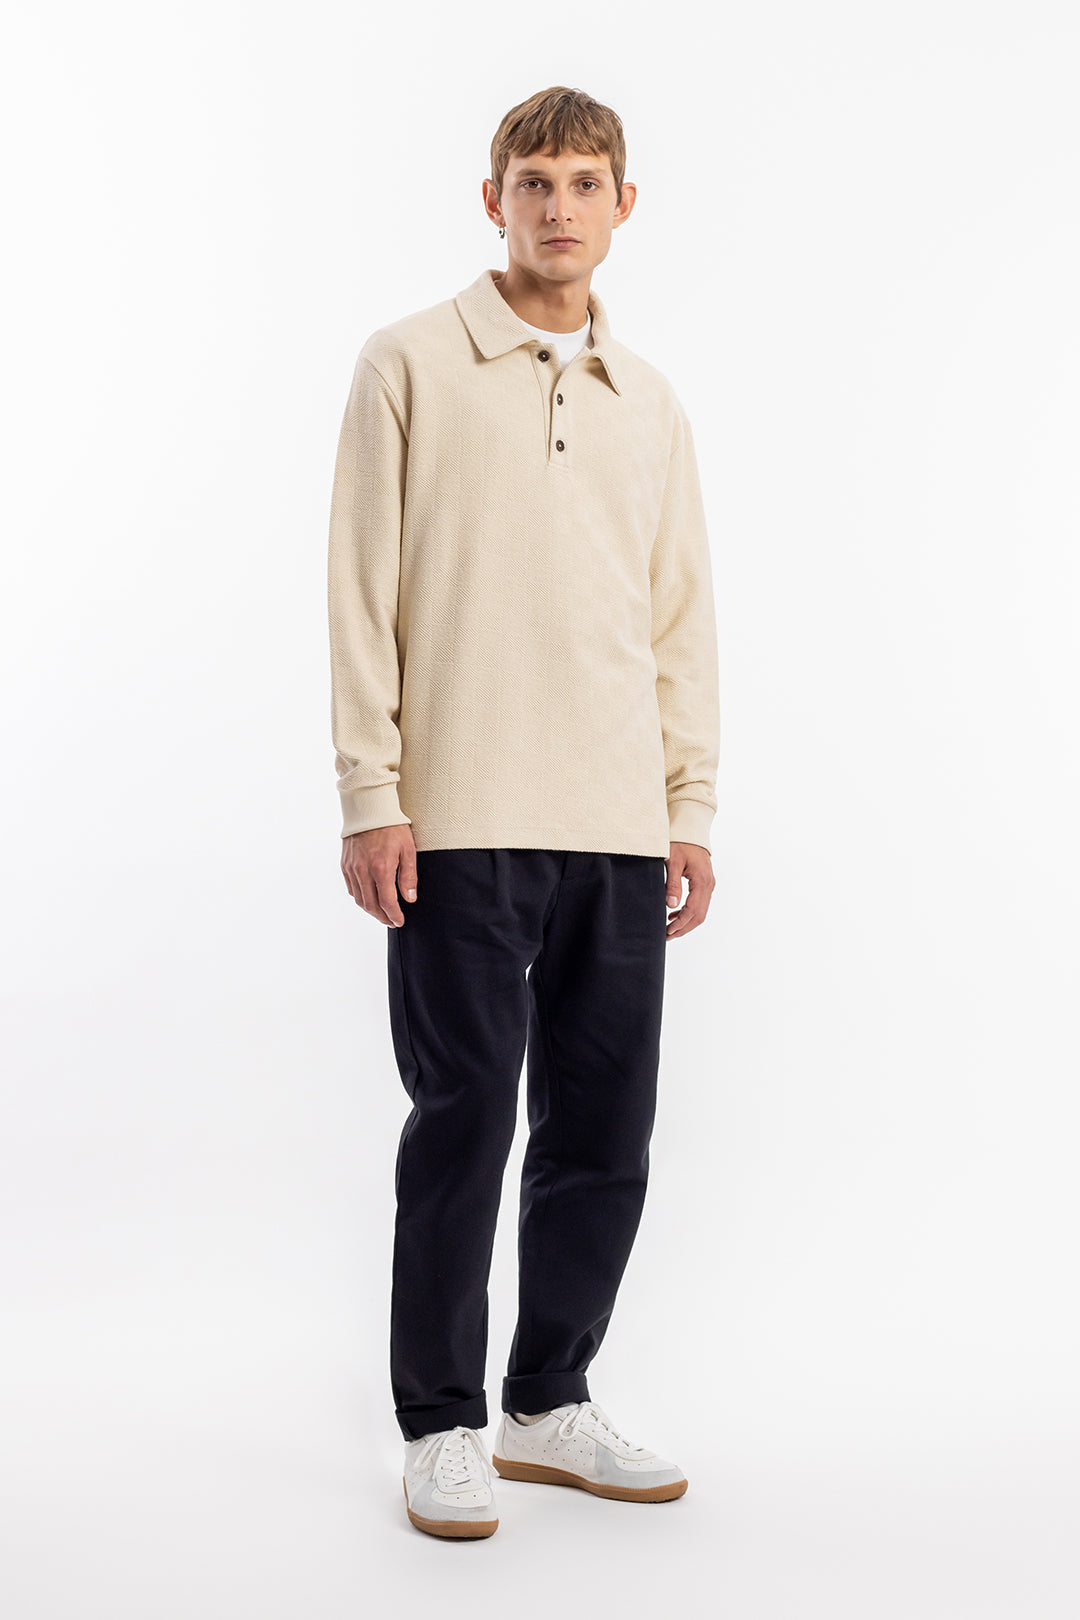 Beiges, langärmliges Polo Shirt aus Bio-Baumwolle von Rotholz